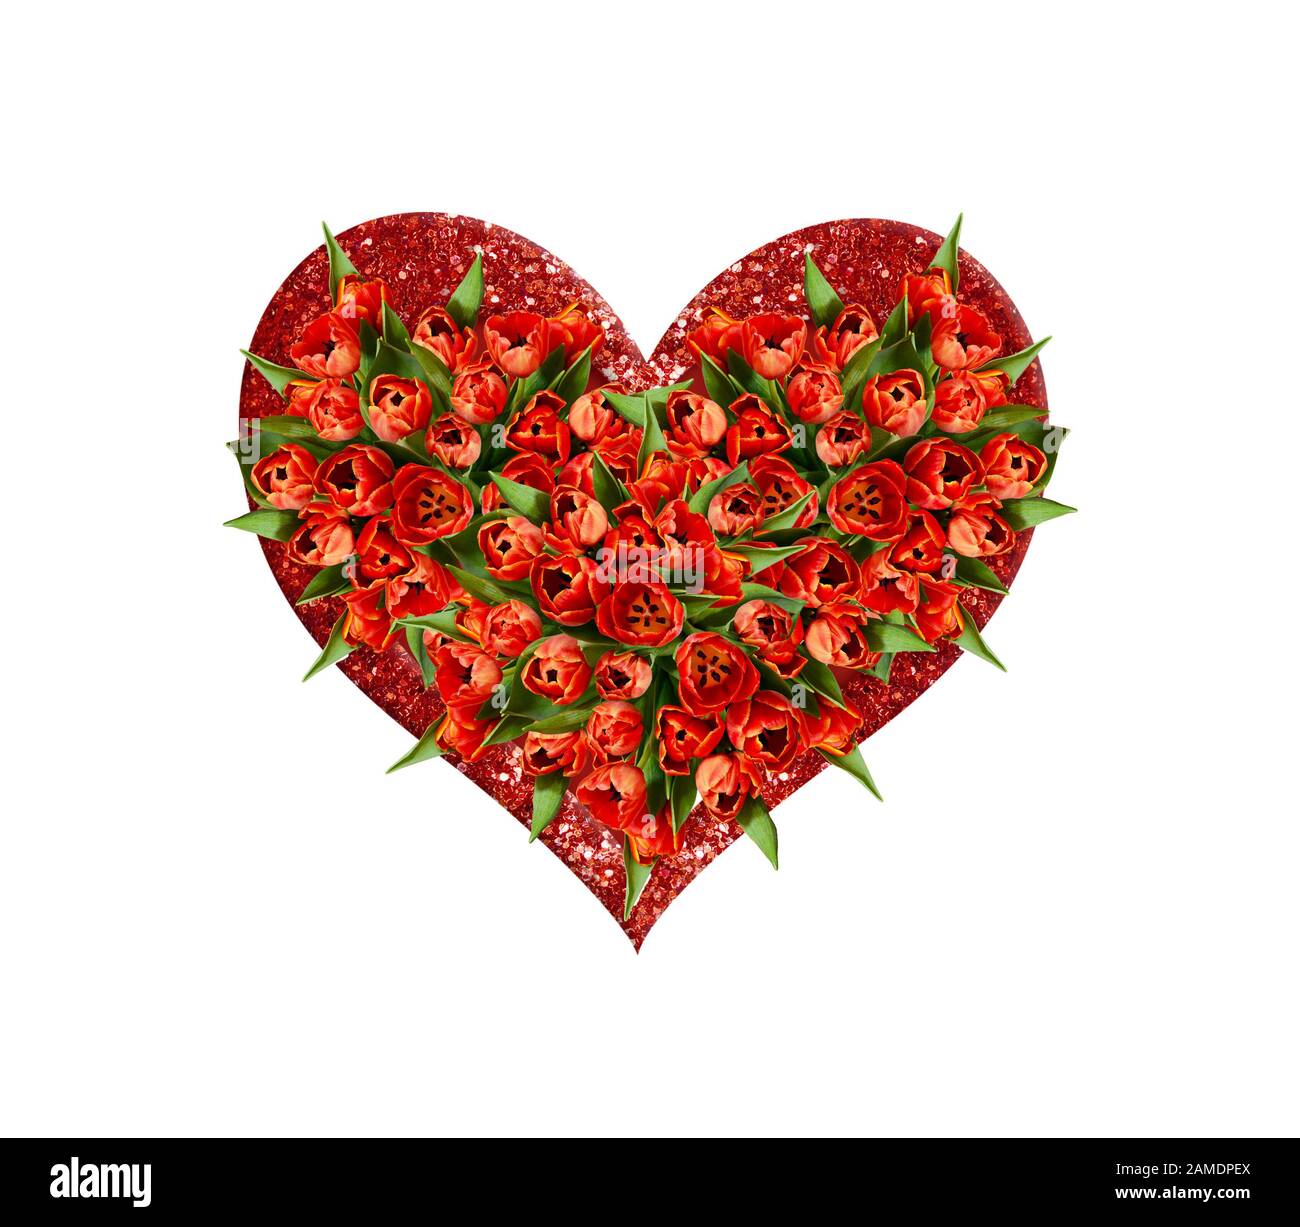 Draufsicht auf einen herzförmigen Blumenstrauß aus roten Tulpenblumen in einem glitzernden Herzen, das auf Weiß isoliert ist Stockfoto